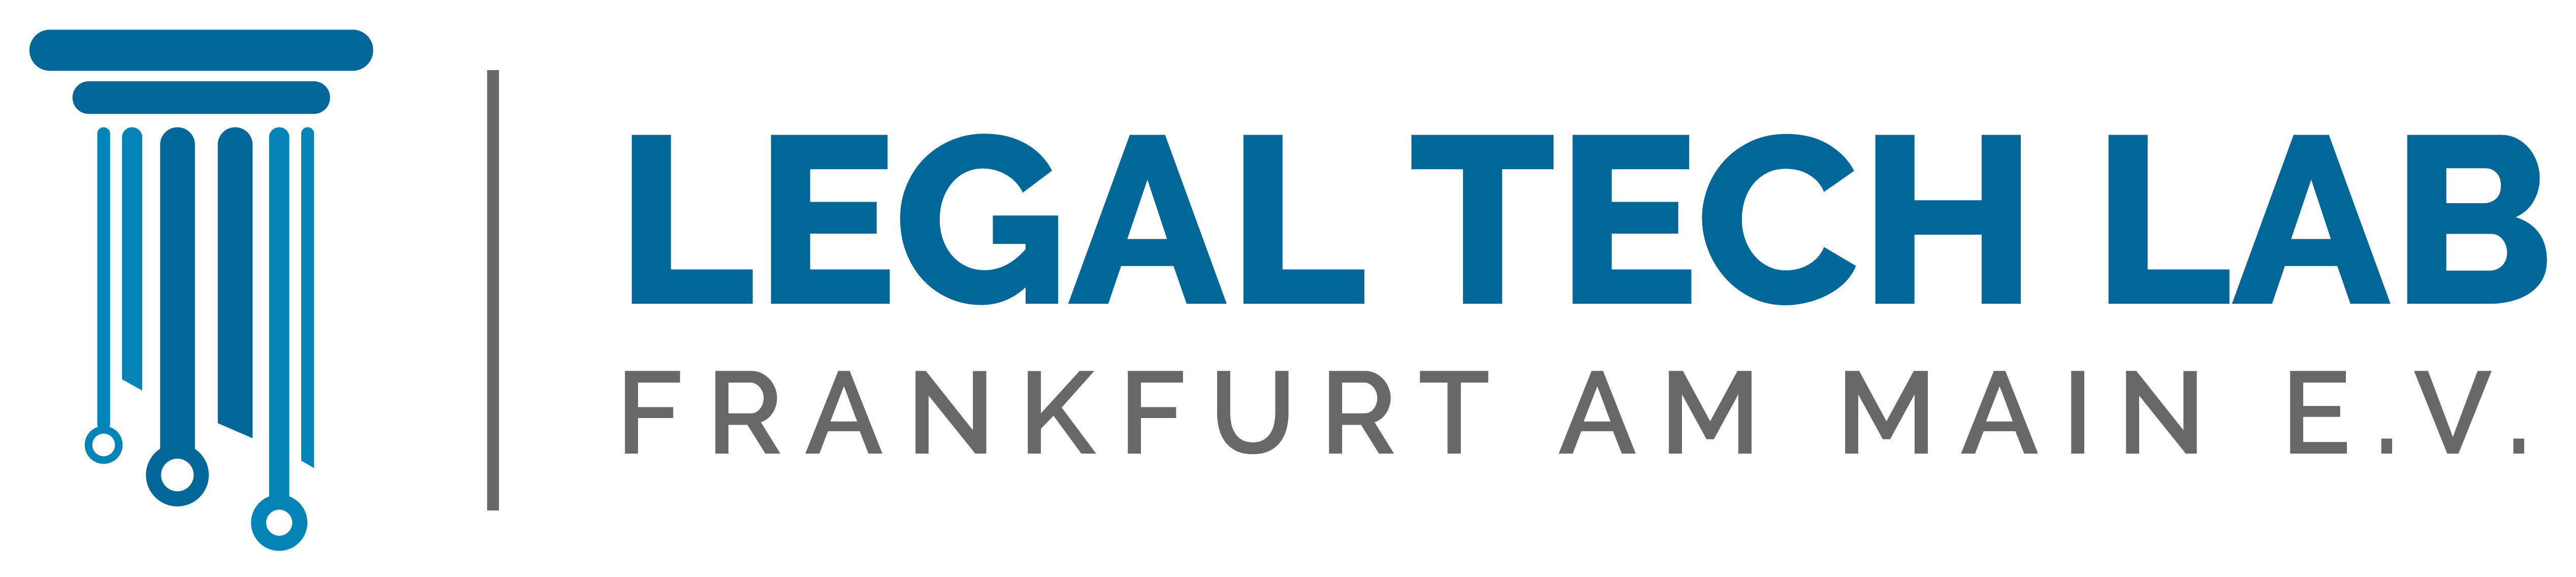 Legal-Tech-Lab-final-logo-01-1